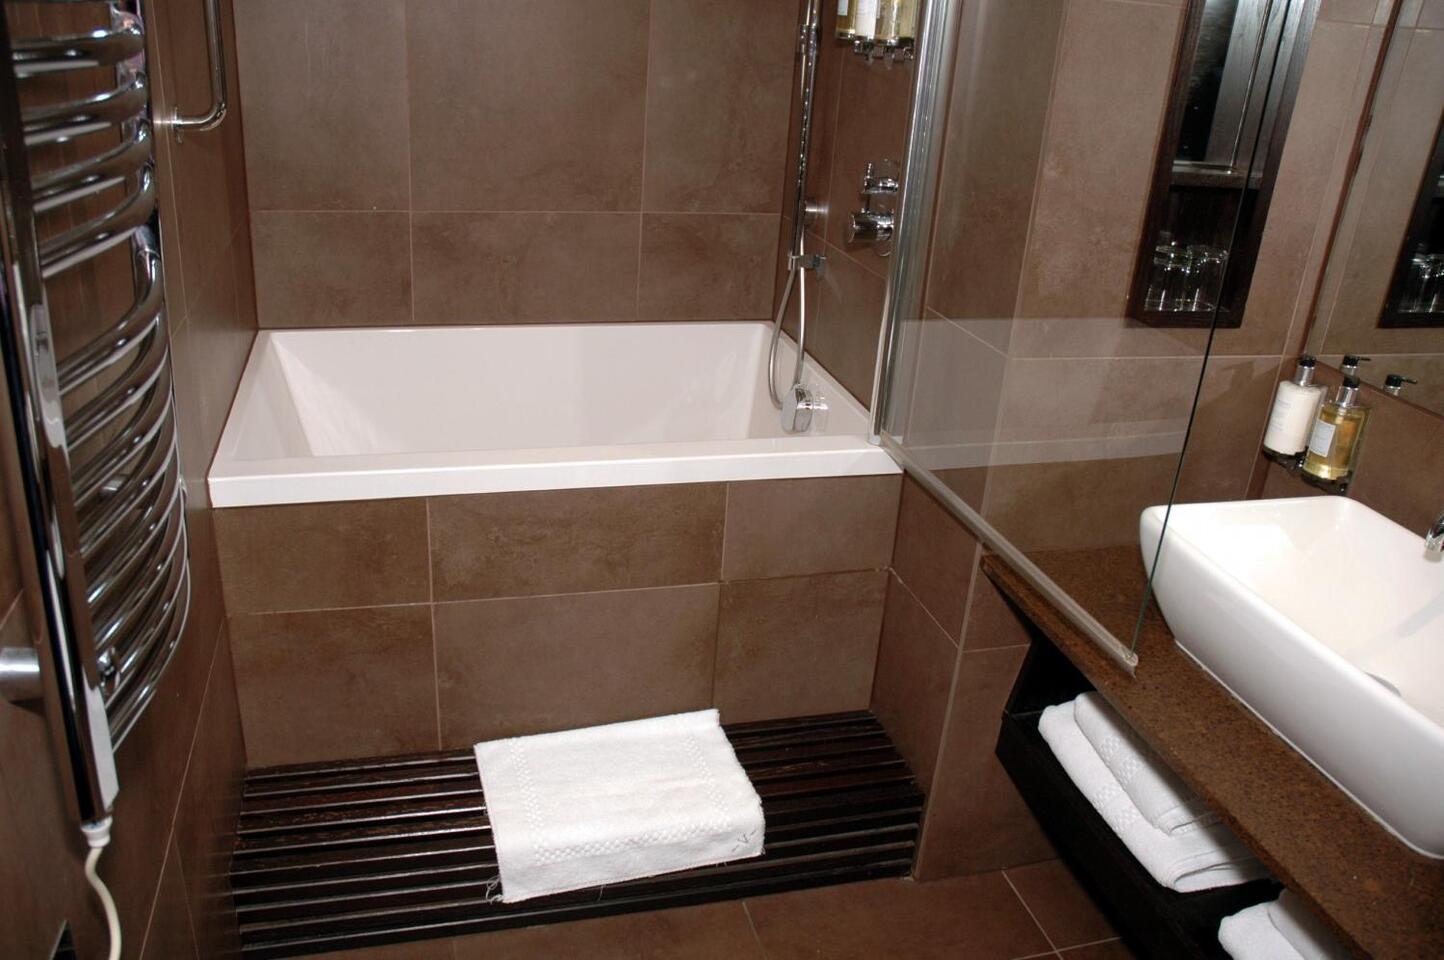 Керамическая плитка для ванной комнаты (дизайн проекты, фото)